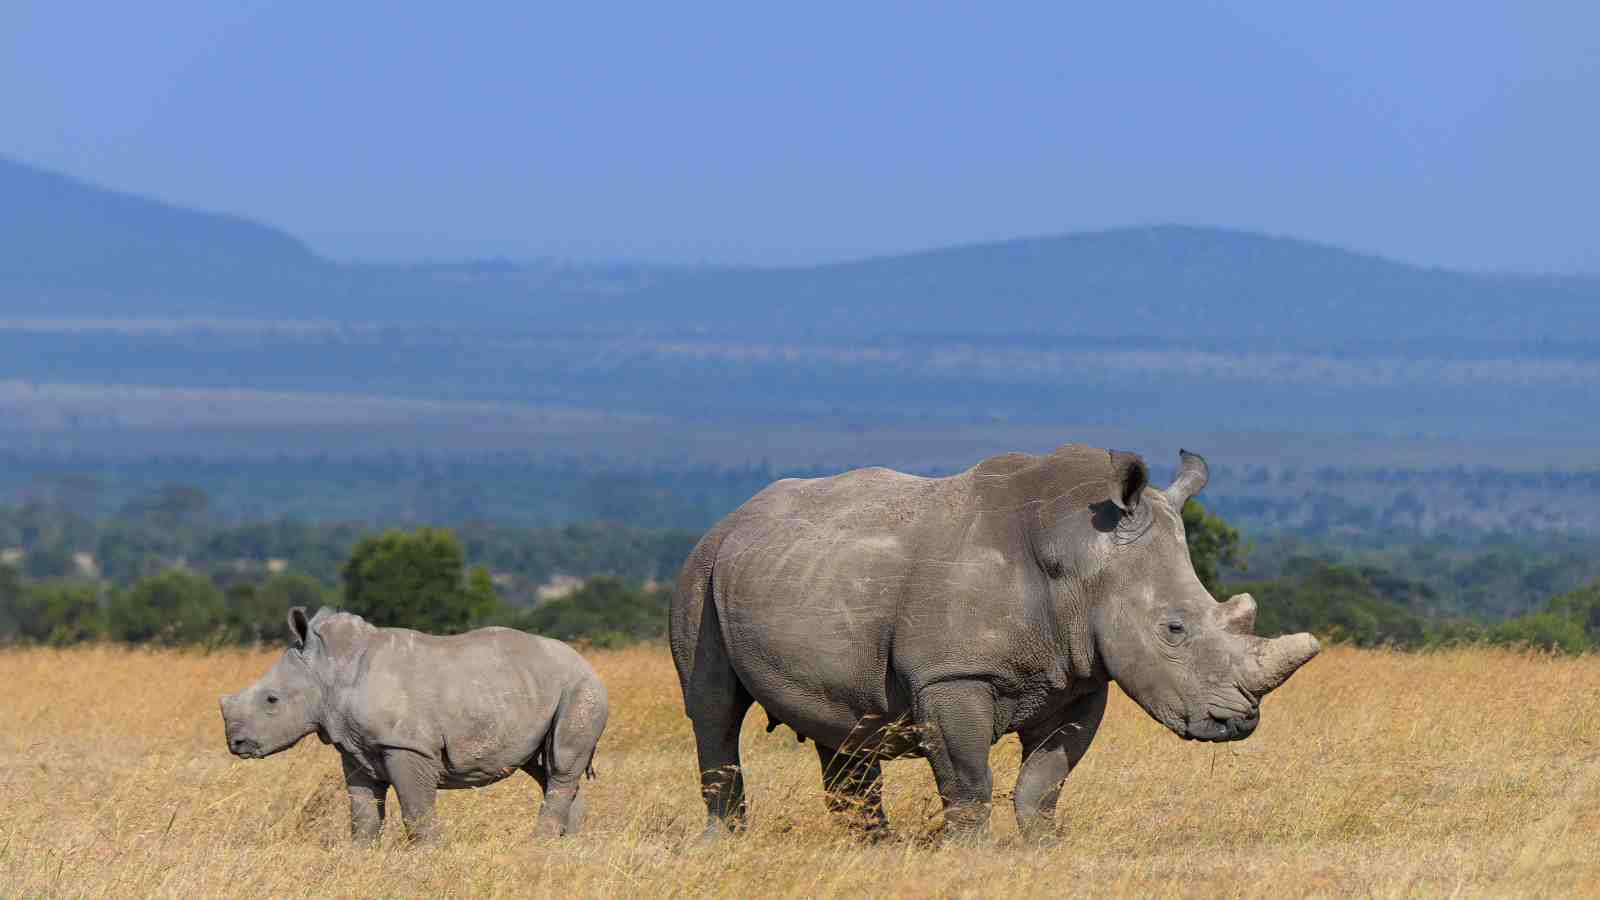 Two Rhinos in a grassy plain.